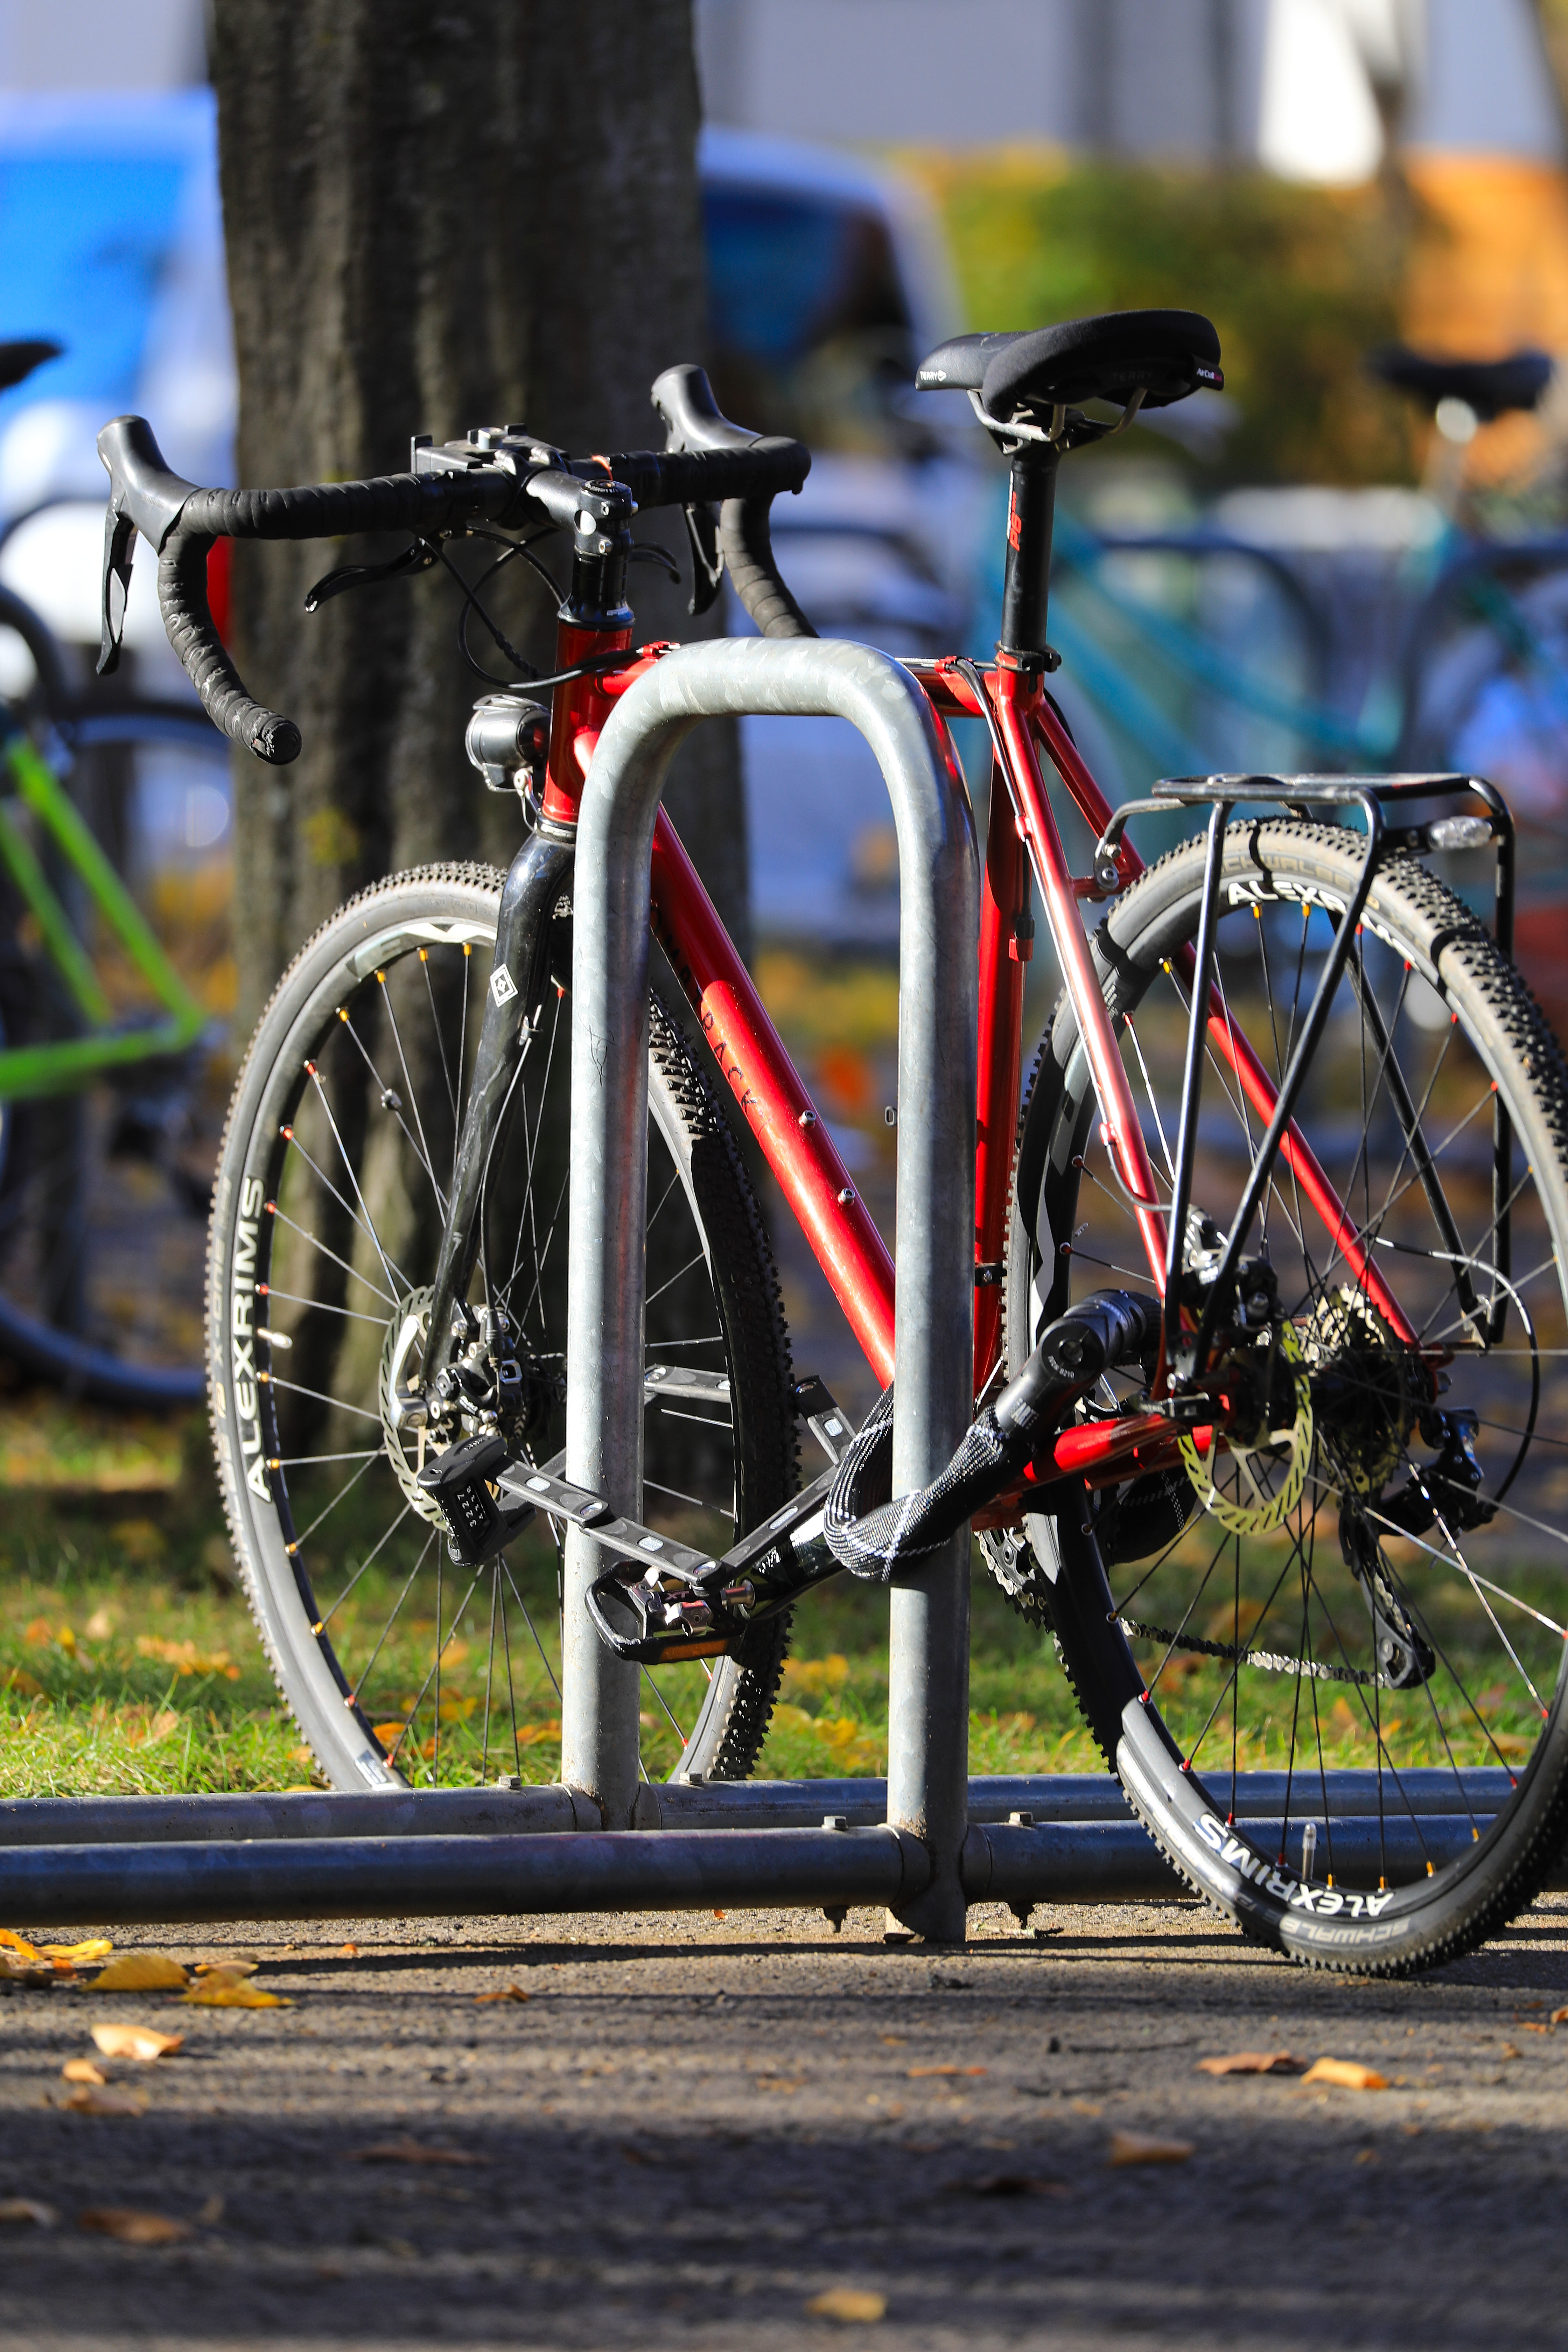 Fahrrad mit Fahrradschlössern richtig gesichert an fest verankertem Fahrradständer.